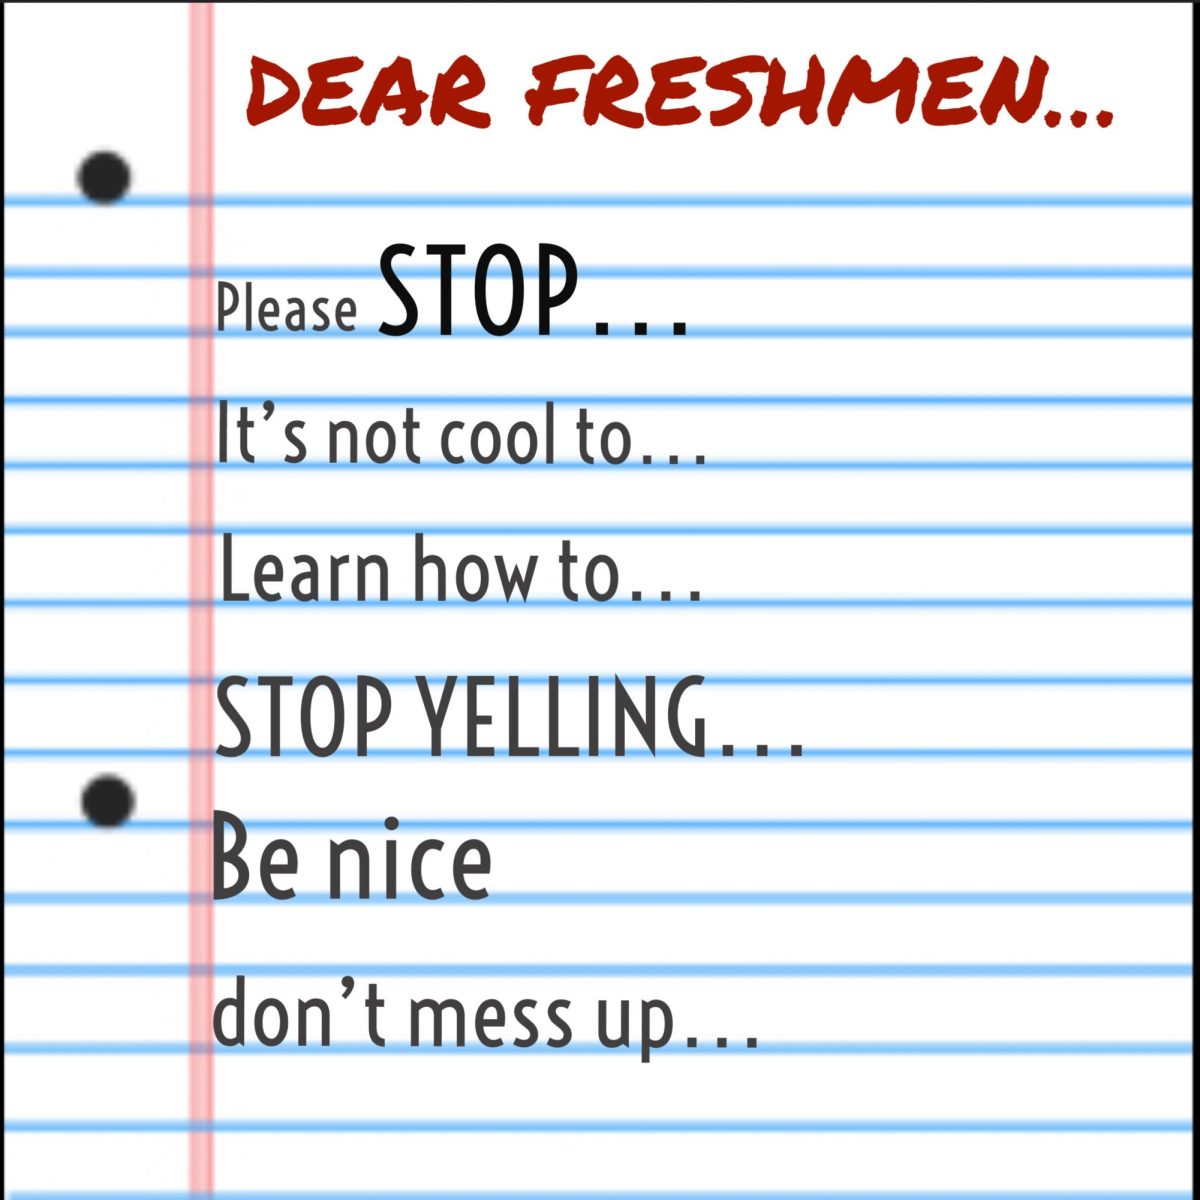 Dear freshmen: A seniors words of advice